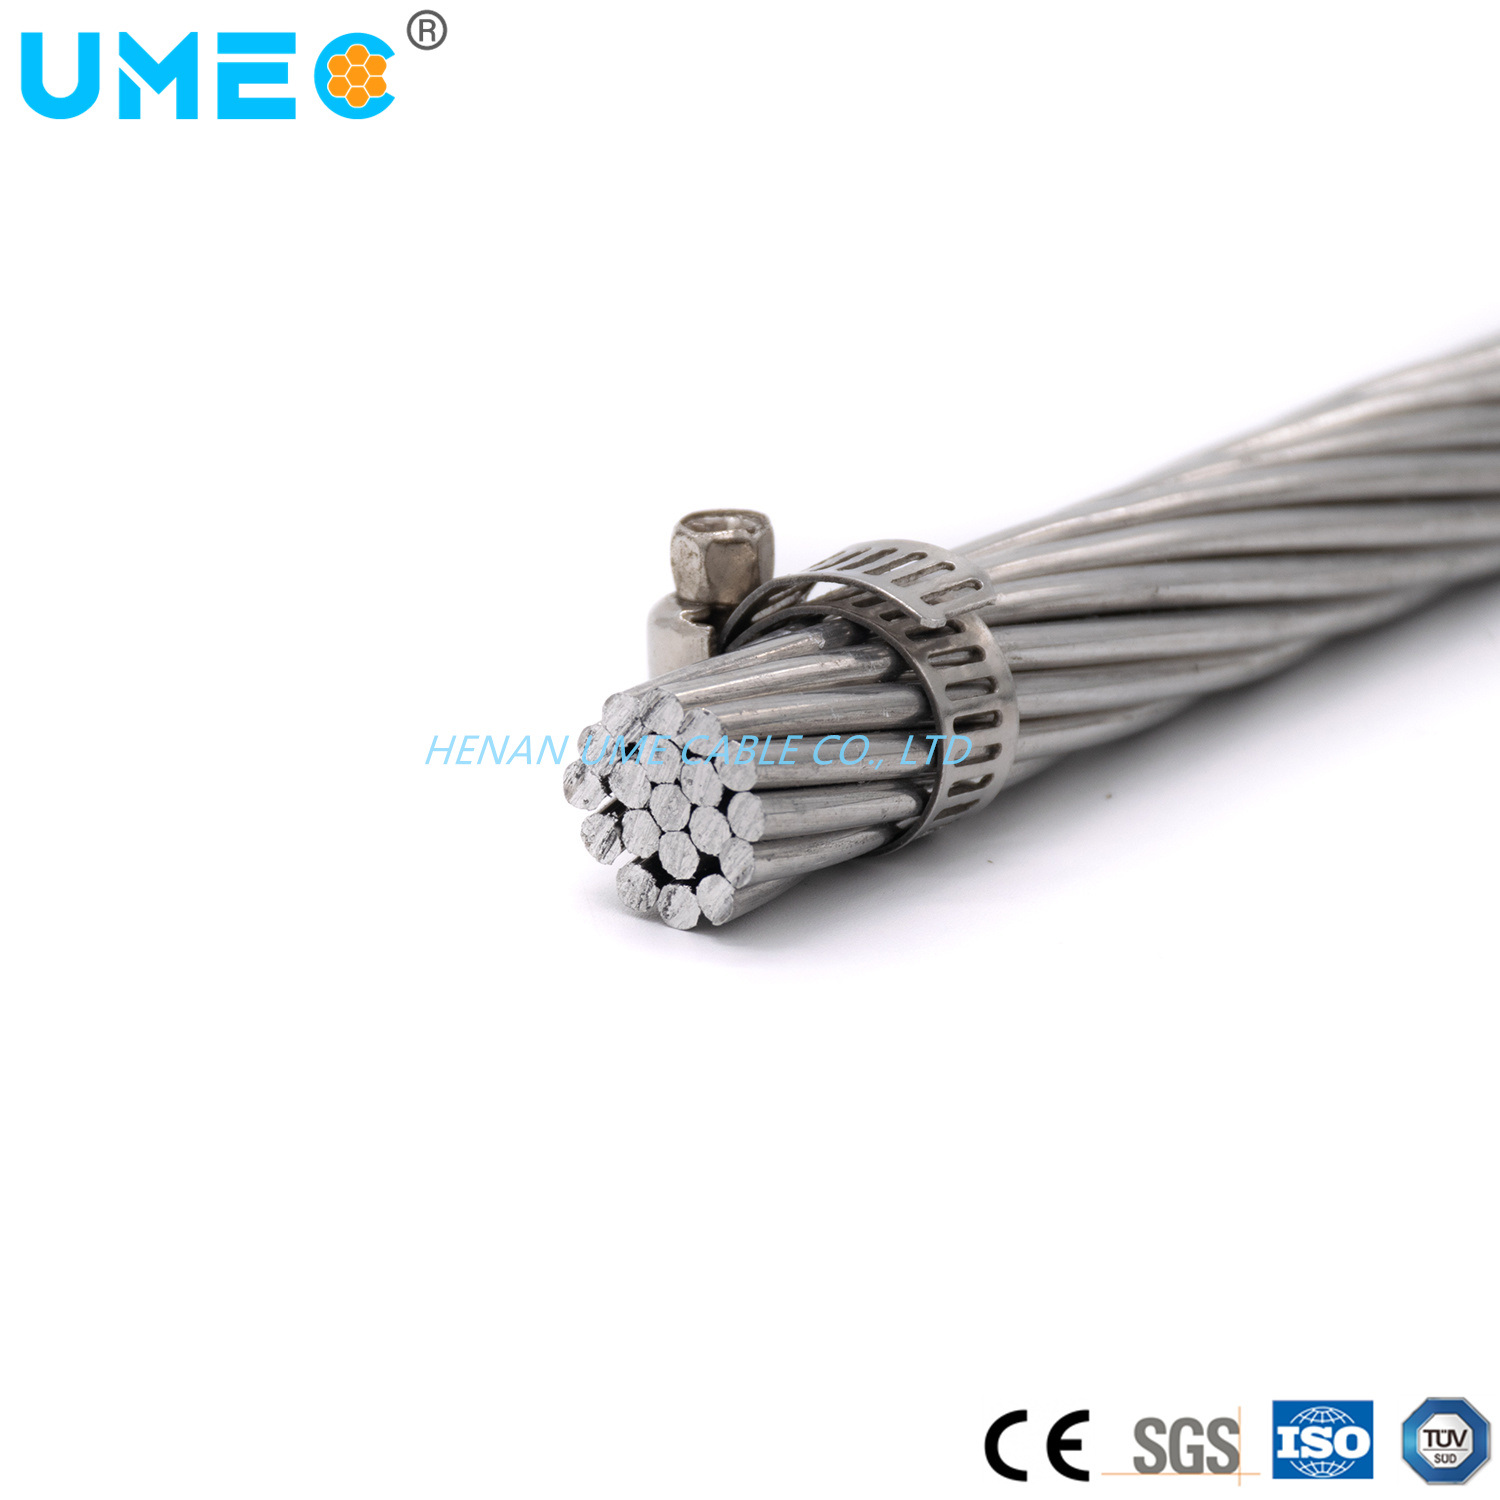 
                IEC 61089 Стандарт 7/1.83 7/2.29 7/2.89 7/3.63, многожильный, 16 кв. мм, выше Алюминиевый проводник AAC Aaaccroder диаметром 1250 кв. мм
            